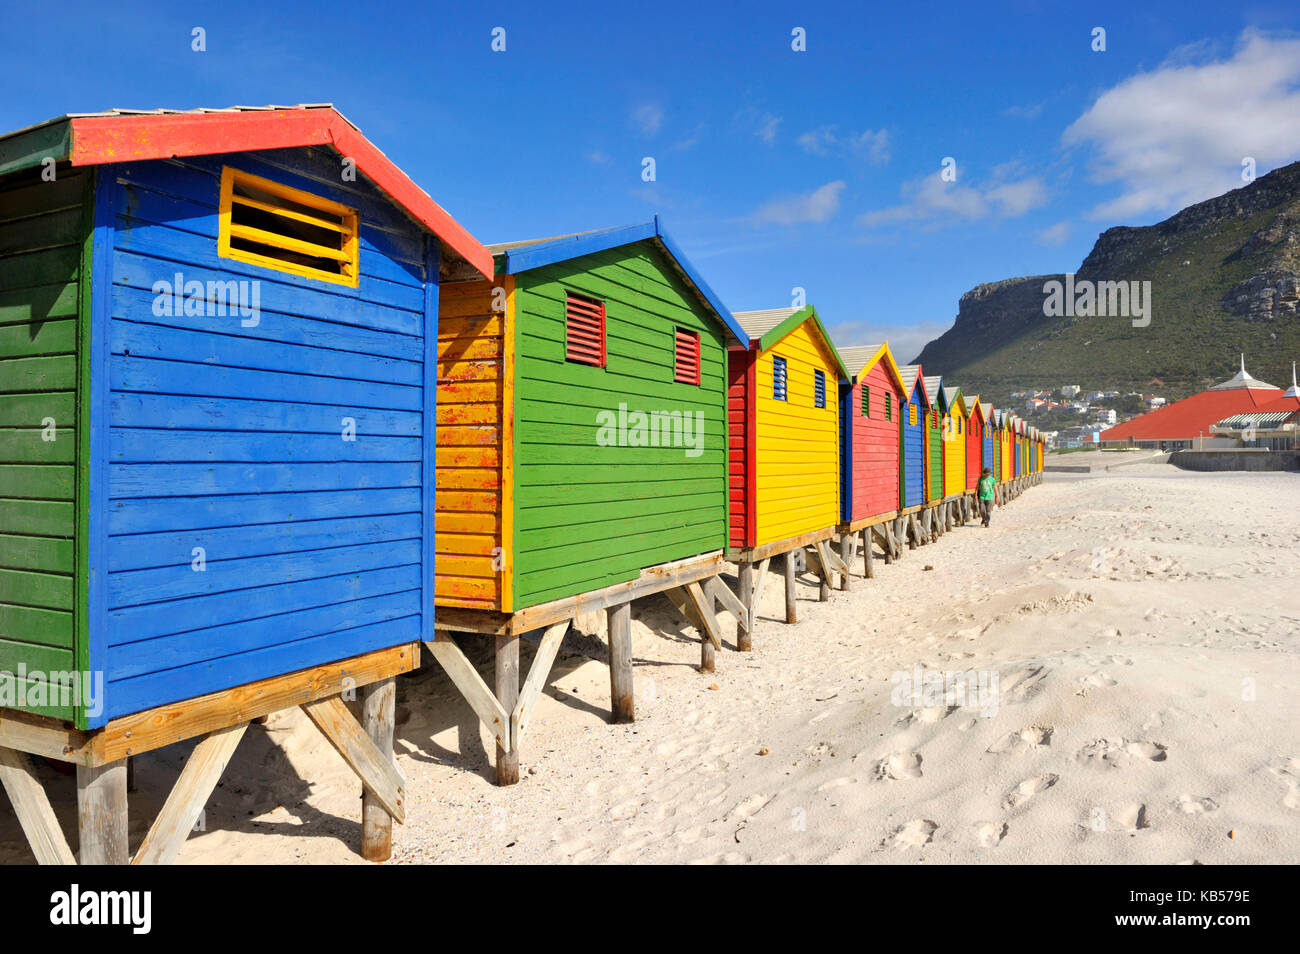 Sud Africa, Western Cape, Cape Peninsula, muizenberg, la spiaggia, cabine da spiaggia Foto Stock